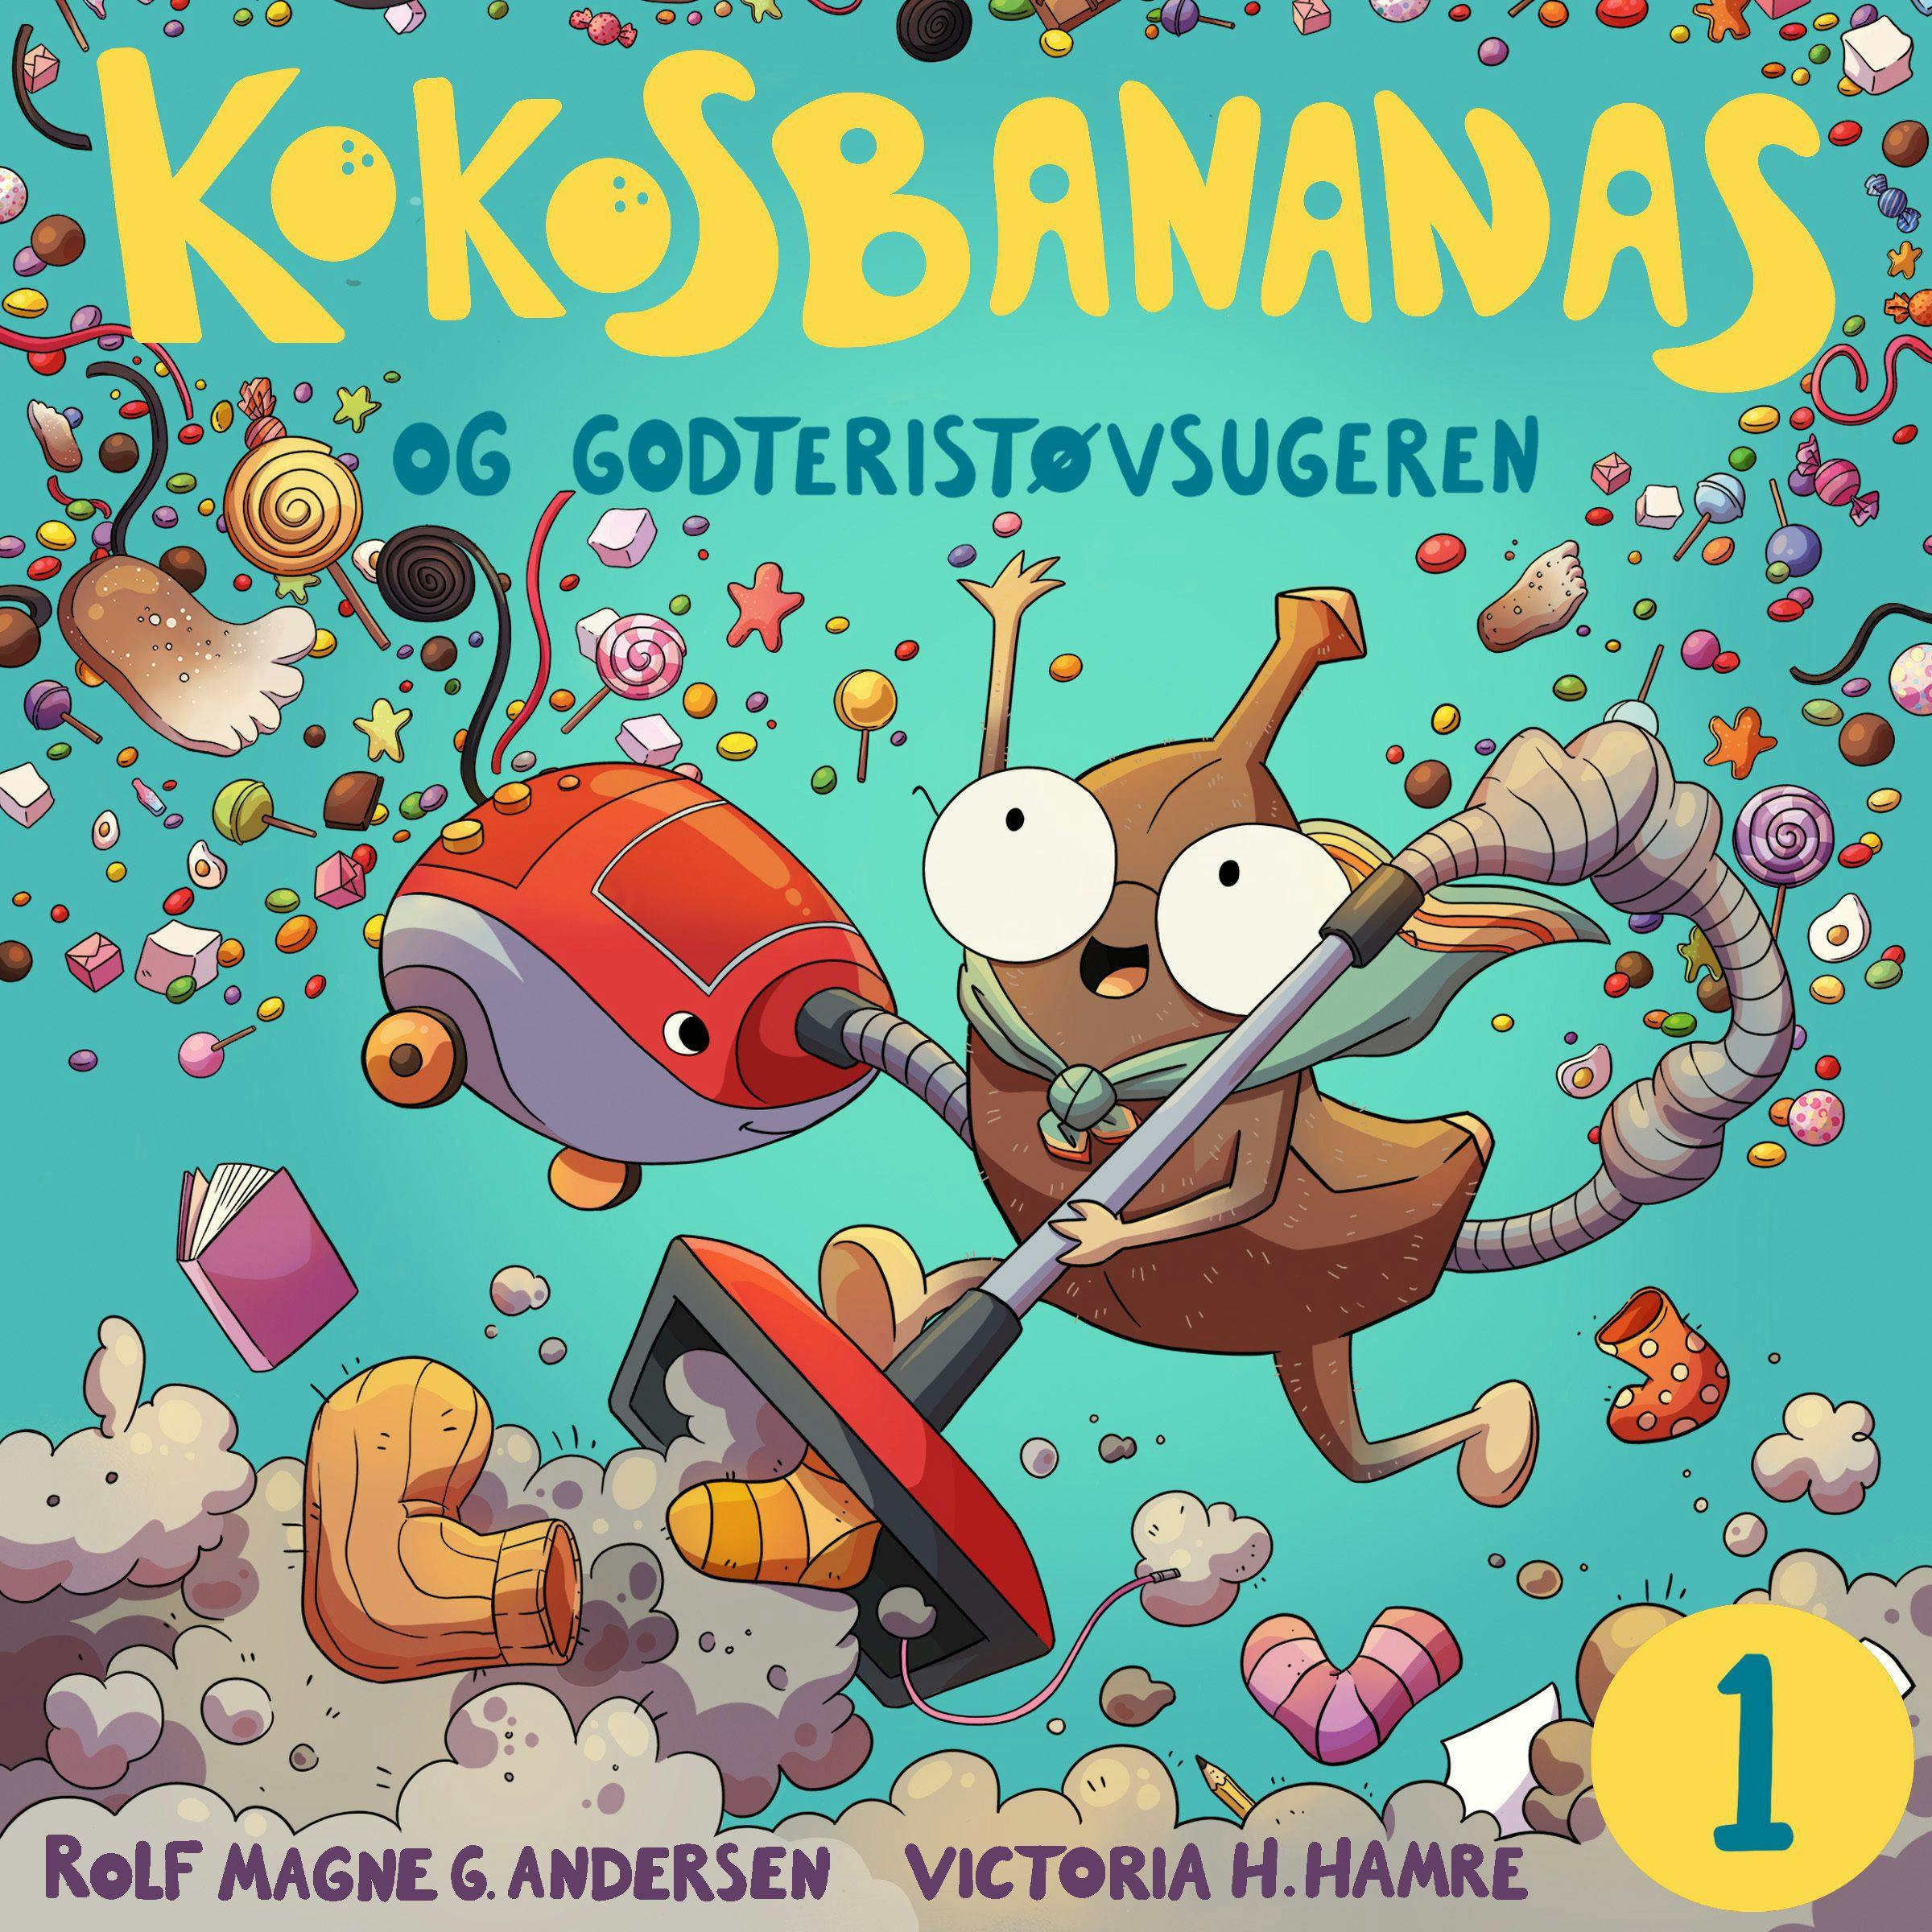 Kokosbananas og godteristøvsugeren - Rolf Magne Andersen